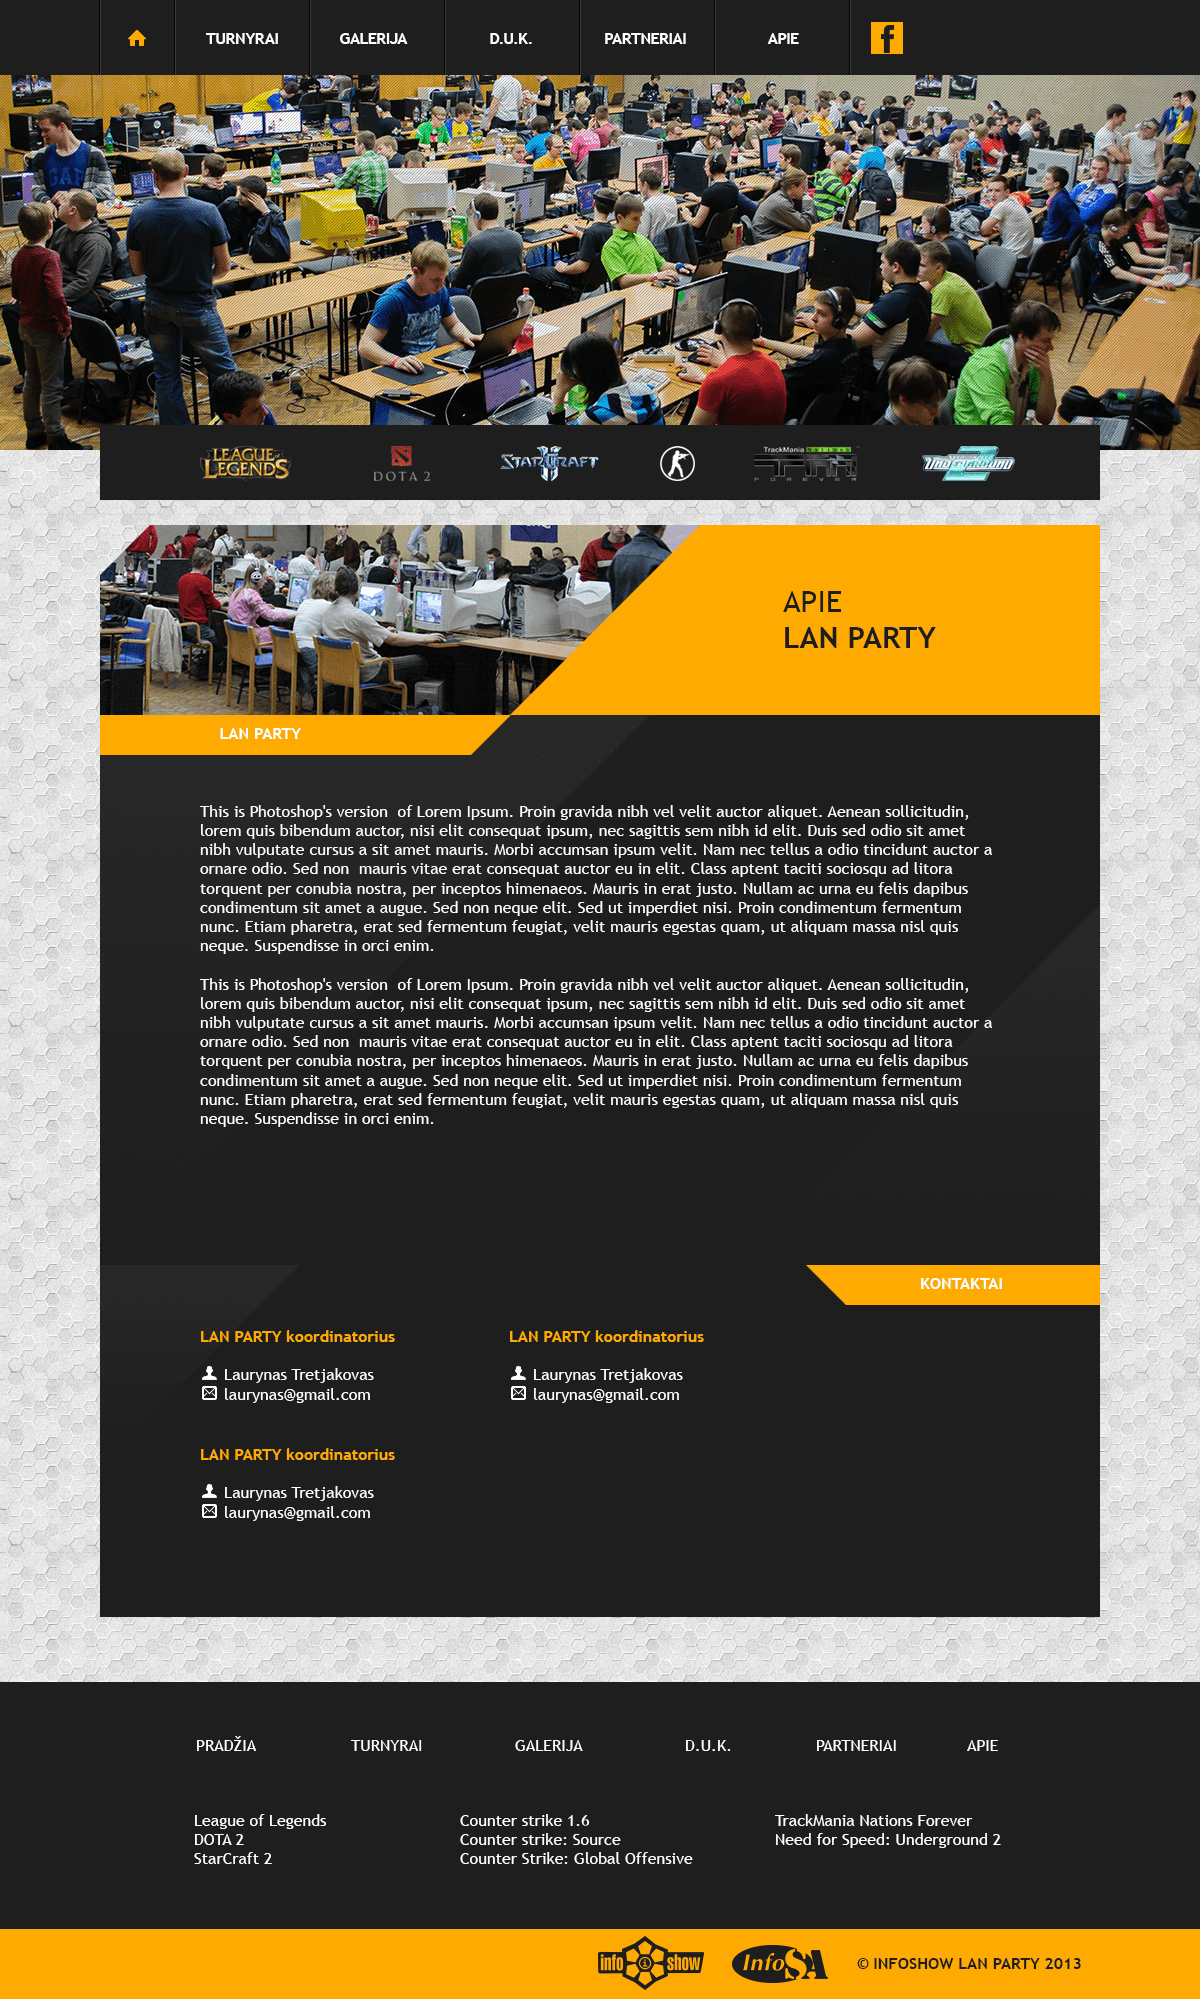 lanparty party Infoshow LAN Games Gaming esports